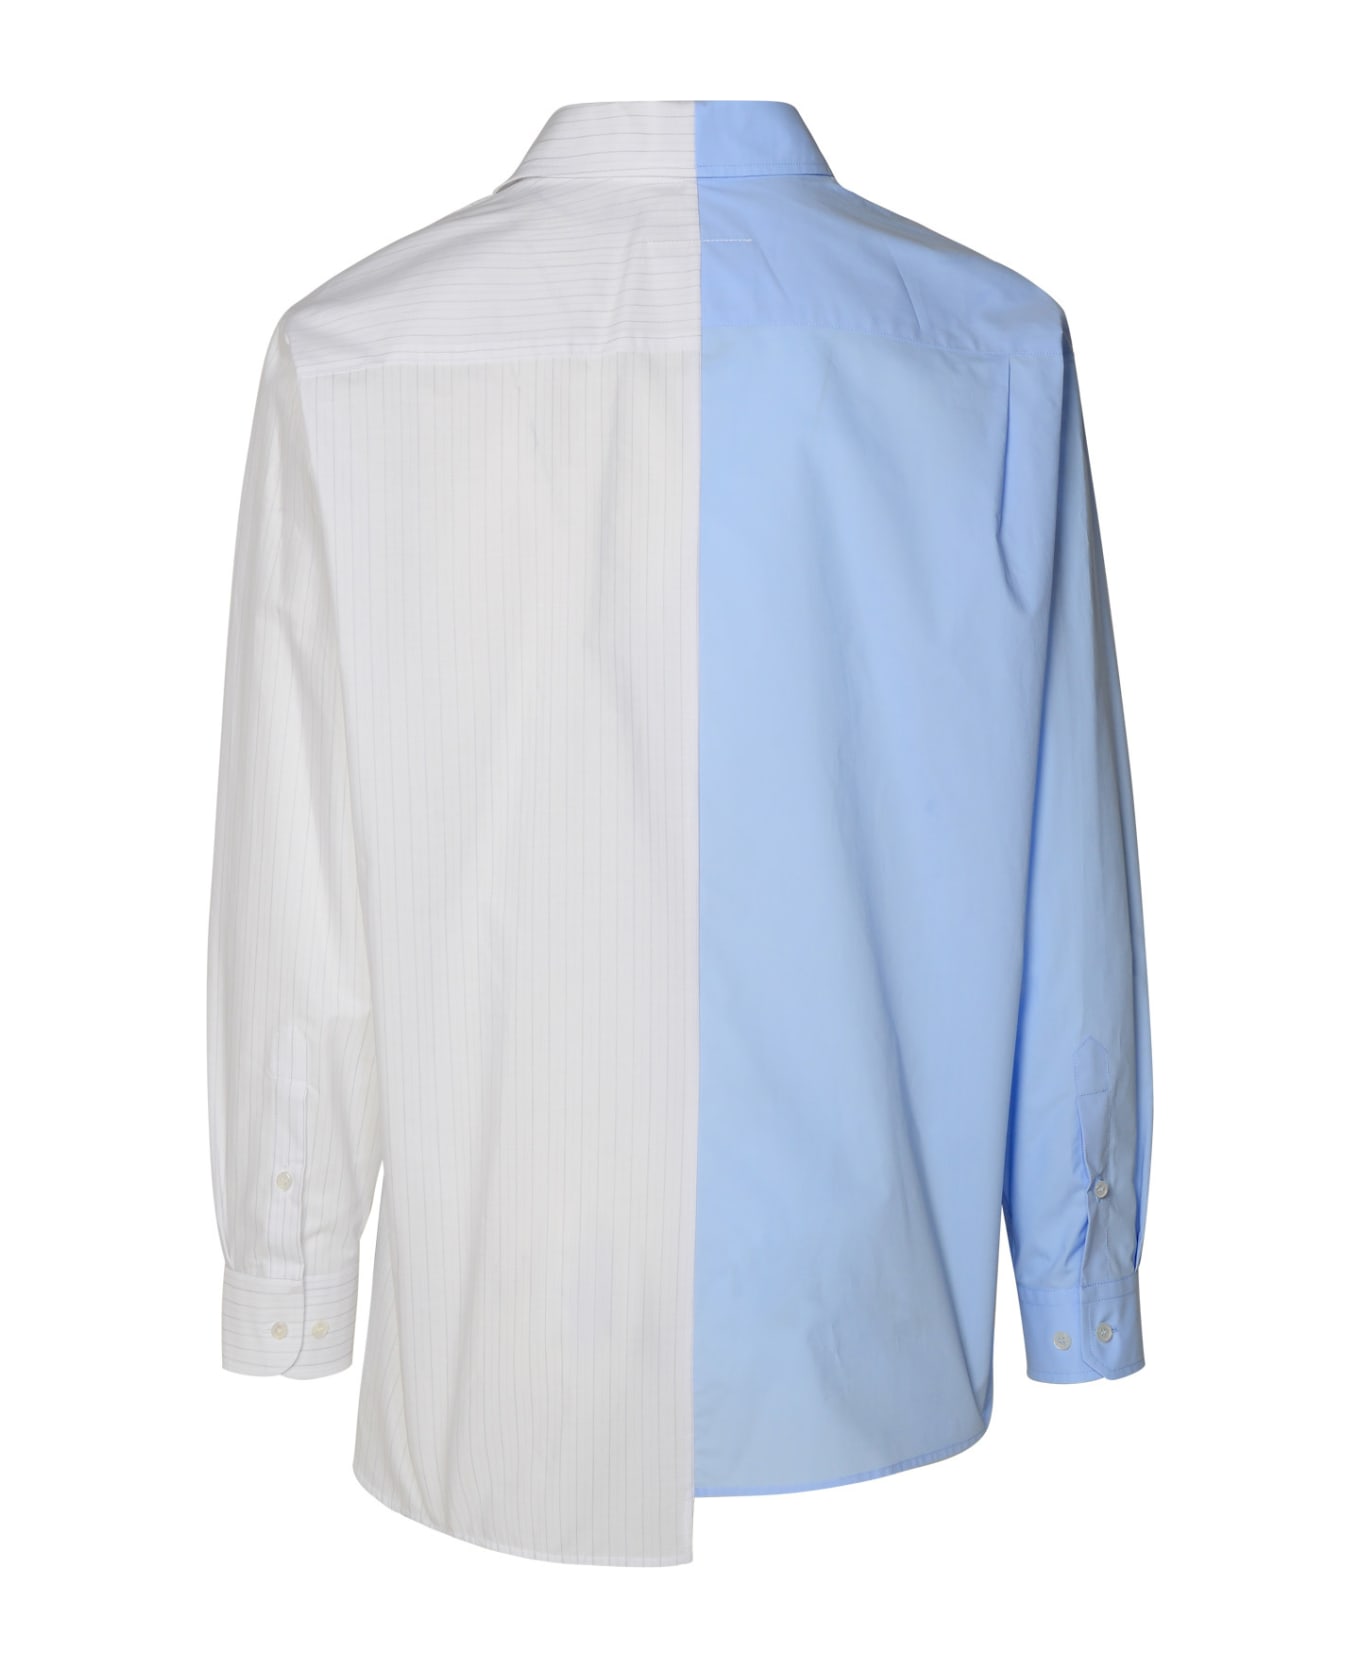 MM6 Maison Margiela Light Blue Cotton Shirt - Light Blue